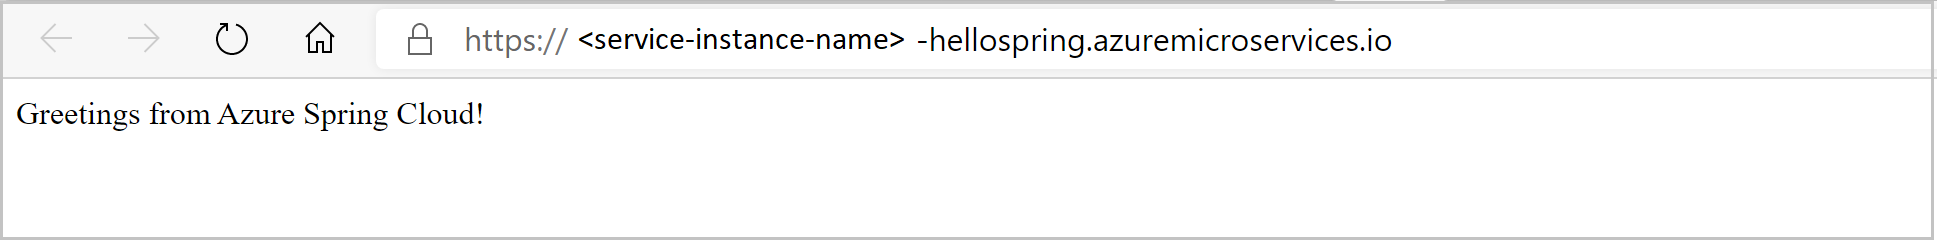 Capture d’écran de l’application Hello Spring, telle qu’affichée dans le navigateur.